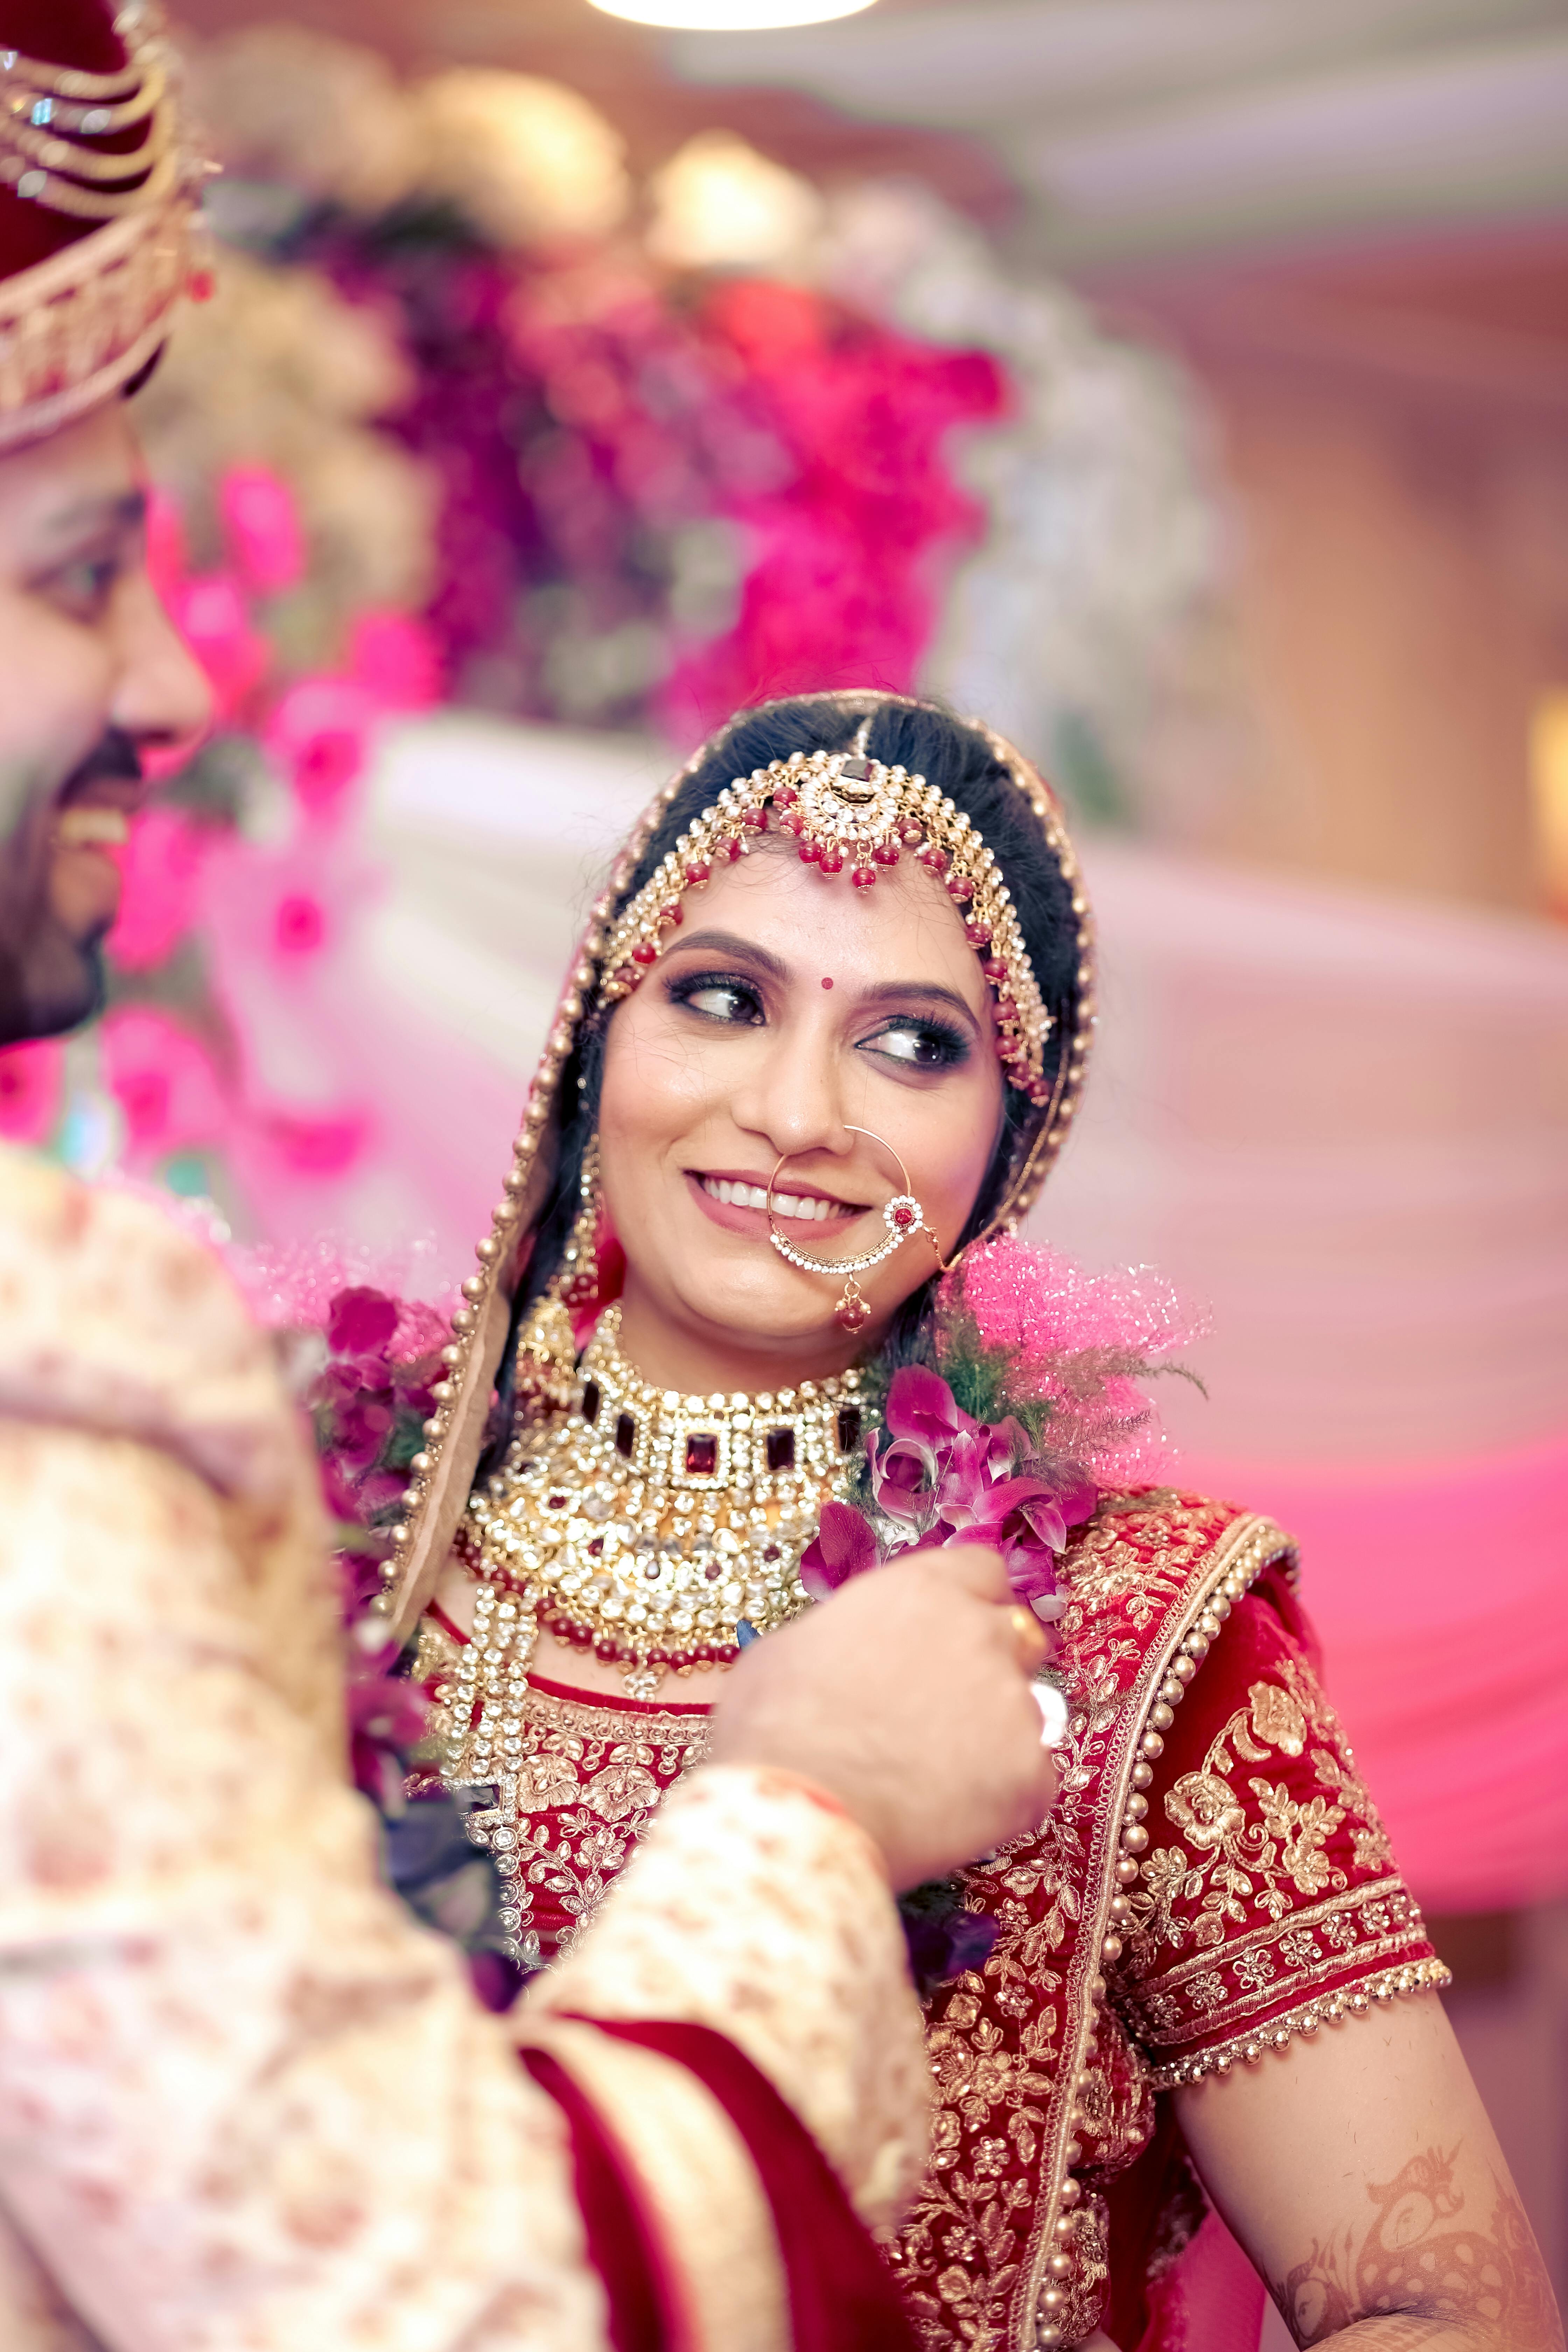 Latest Indian wedding couple photography poses 2022 | Latest Photoshoot | Dulha  Dulhan Photo poses - YouTube